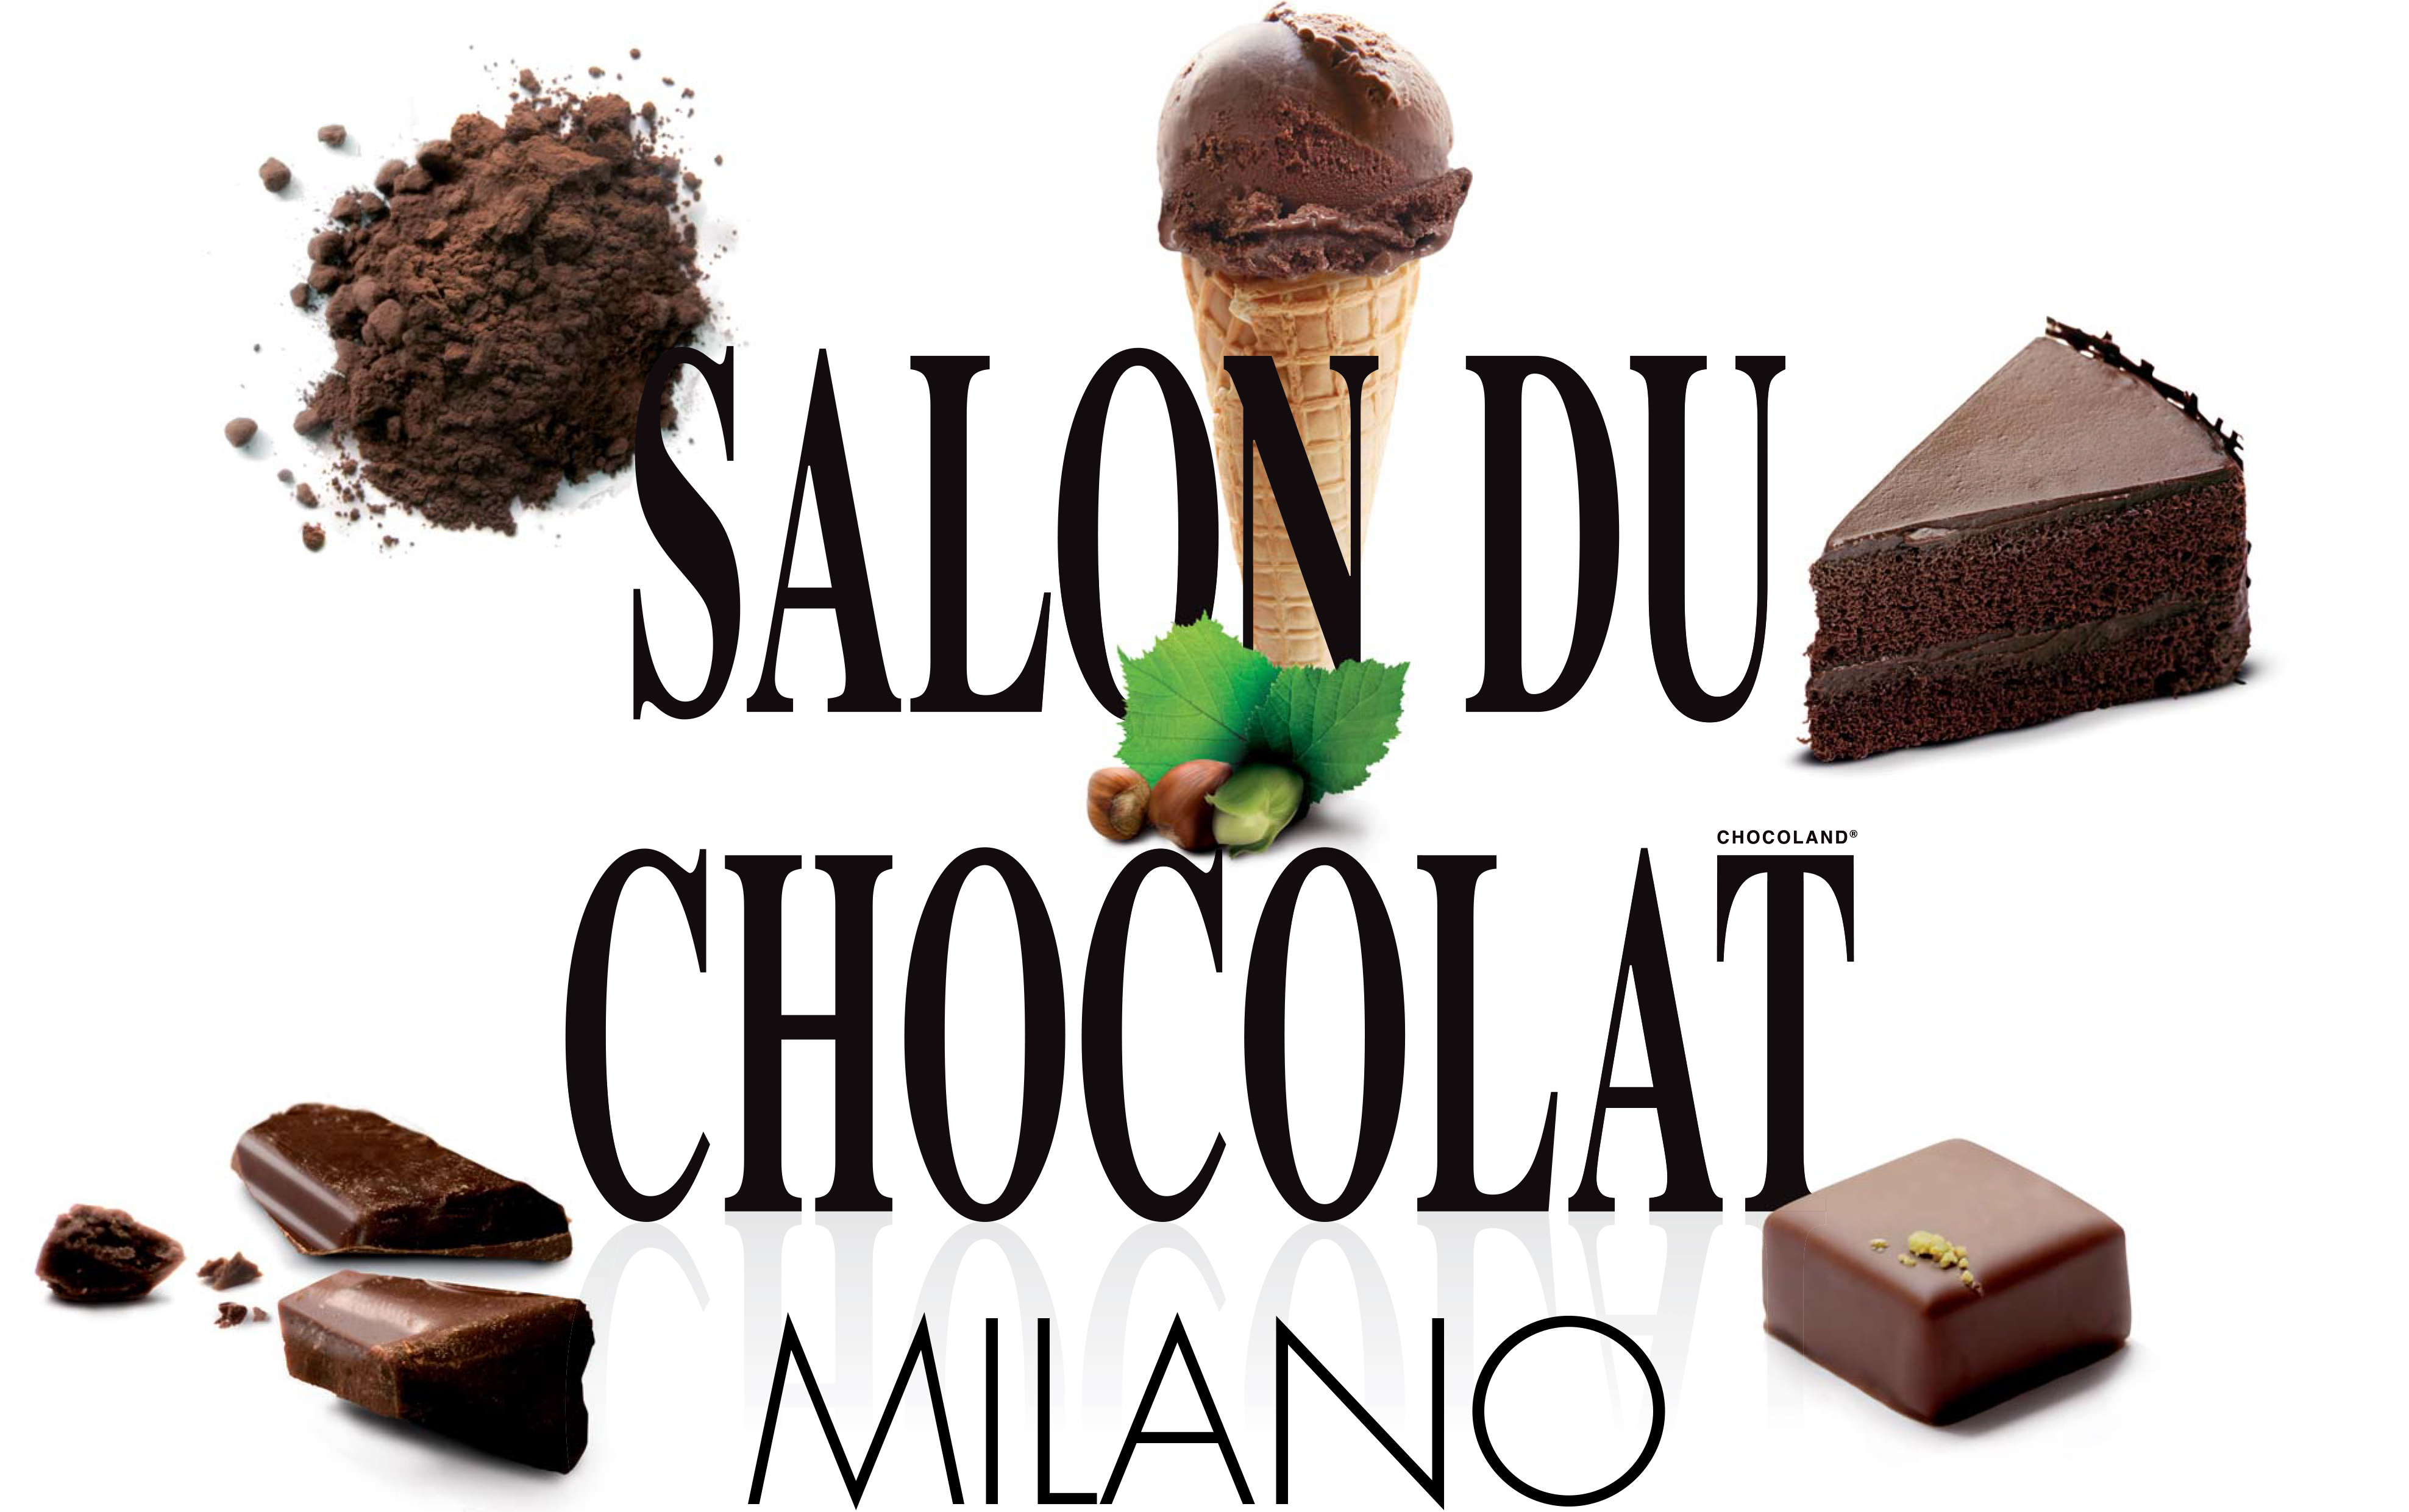 salon du chocolat 2017 milano